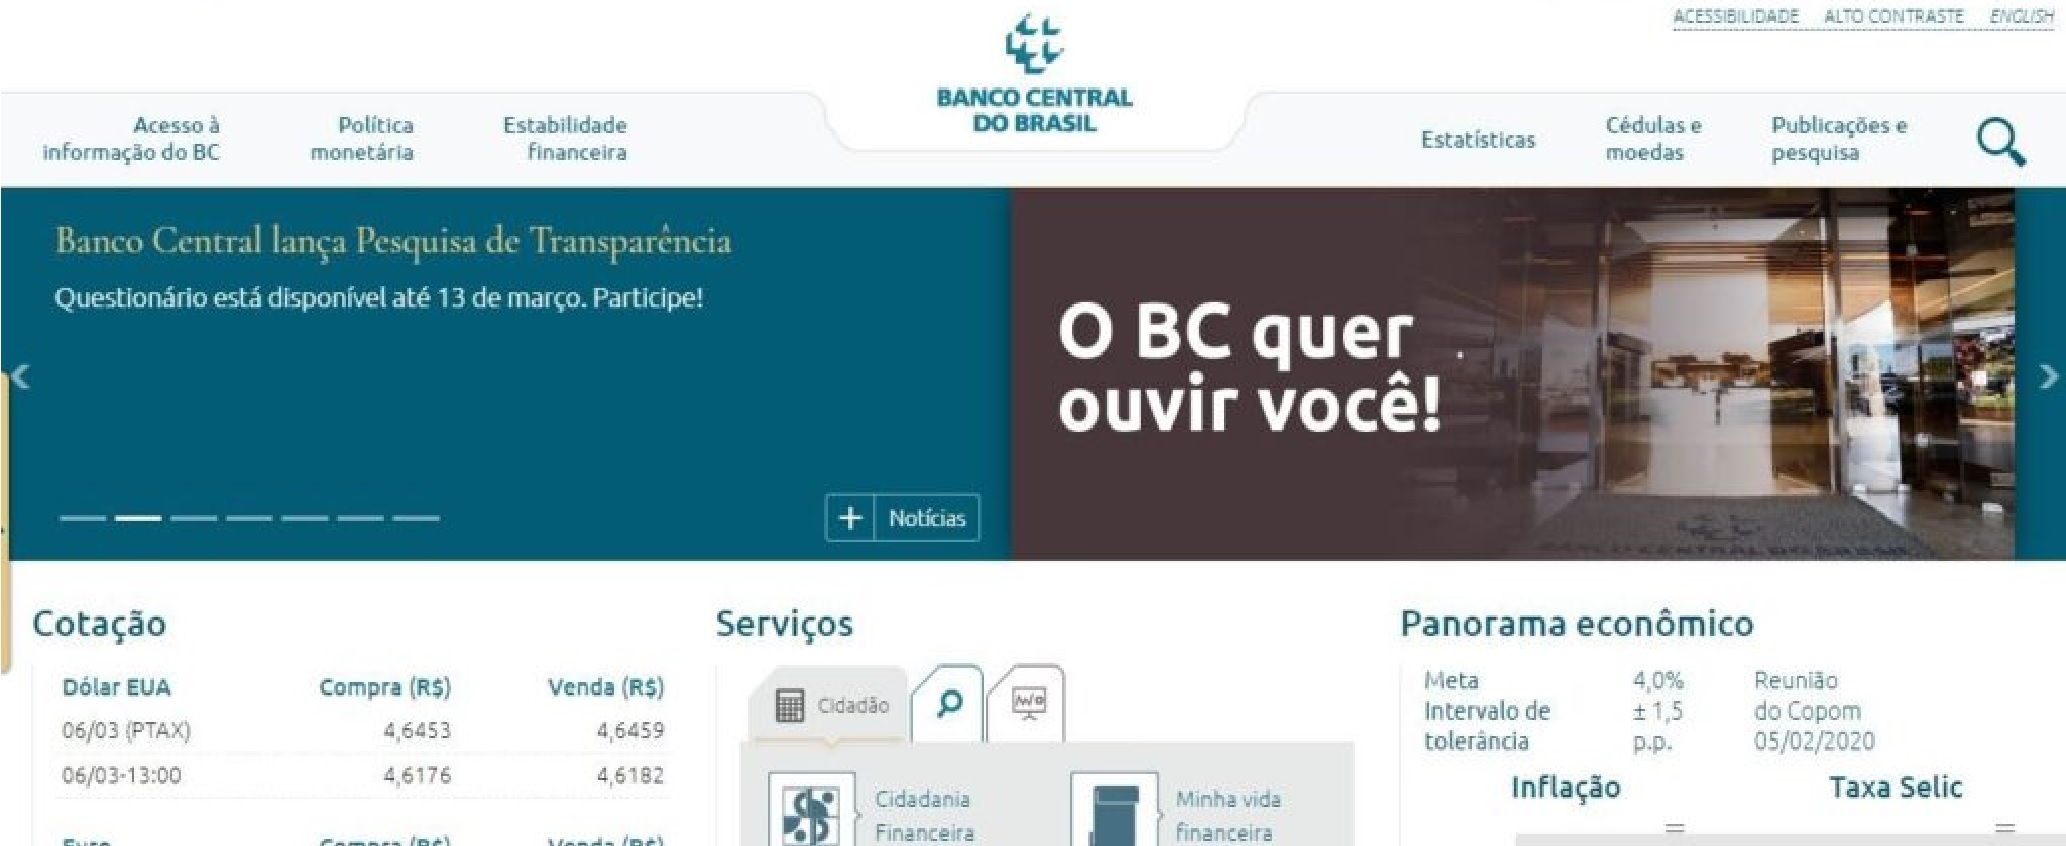 https://aldoadv.com - Banco Central do Brasil | Reclamações